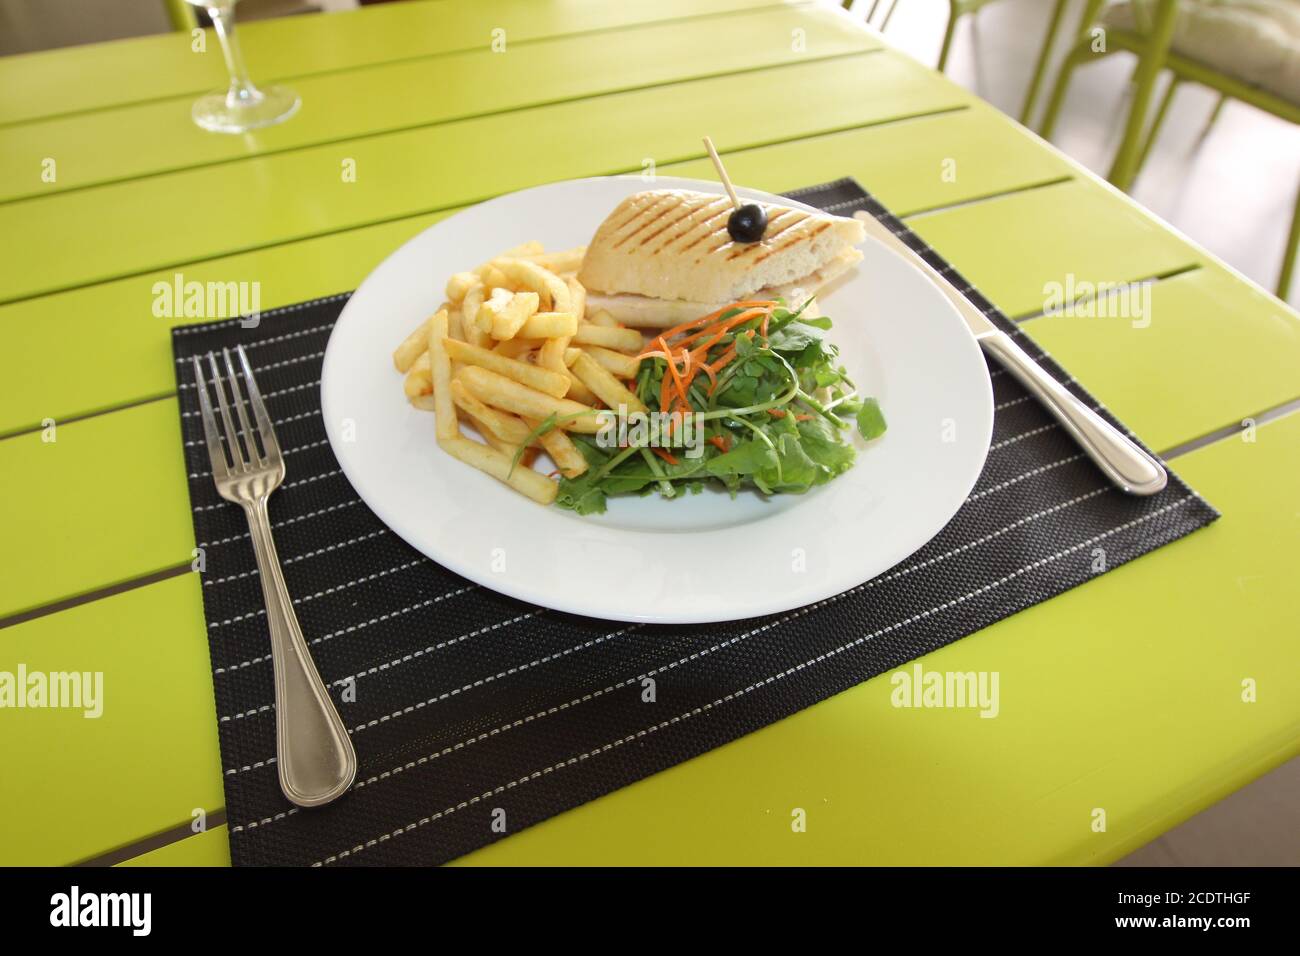 Il menu del ristorante. I piatti che danno a ristoranti. Le insalate, secondo corsi, pizza e altri Foto Stock